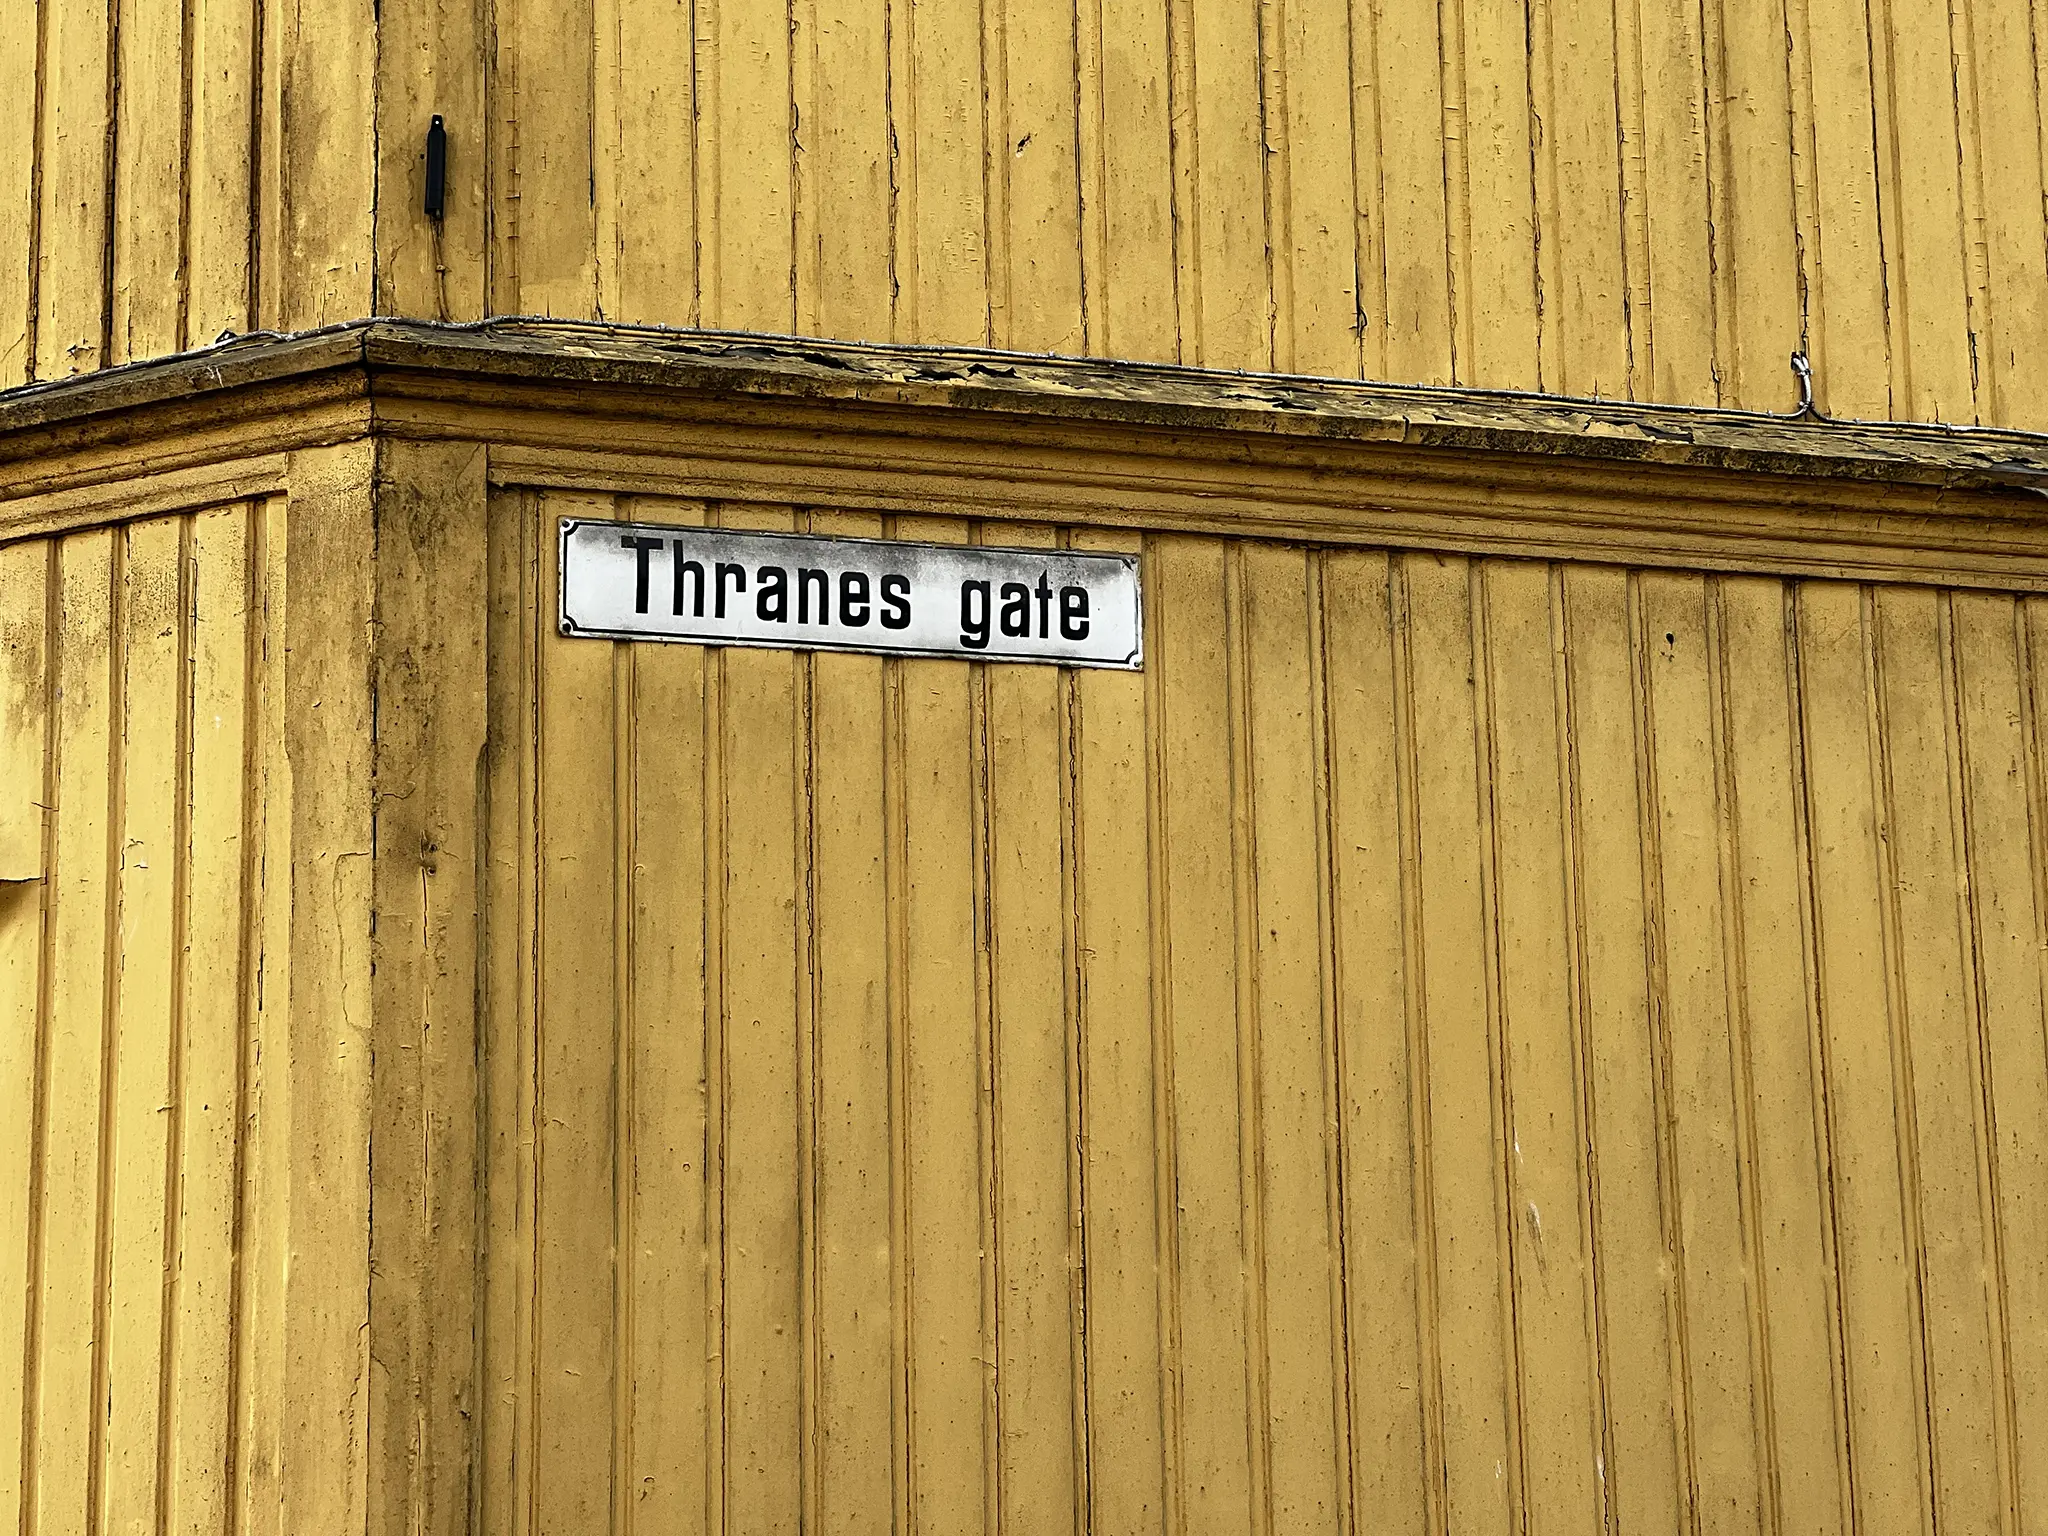 Gammelt gateskilt med teksten Thranes Gate på gul rustikk vegg.